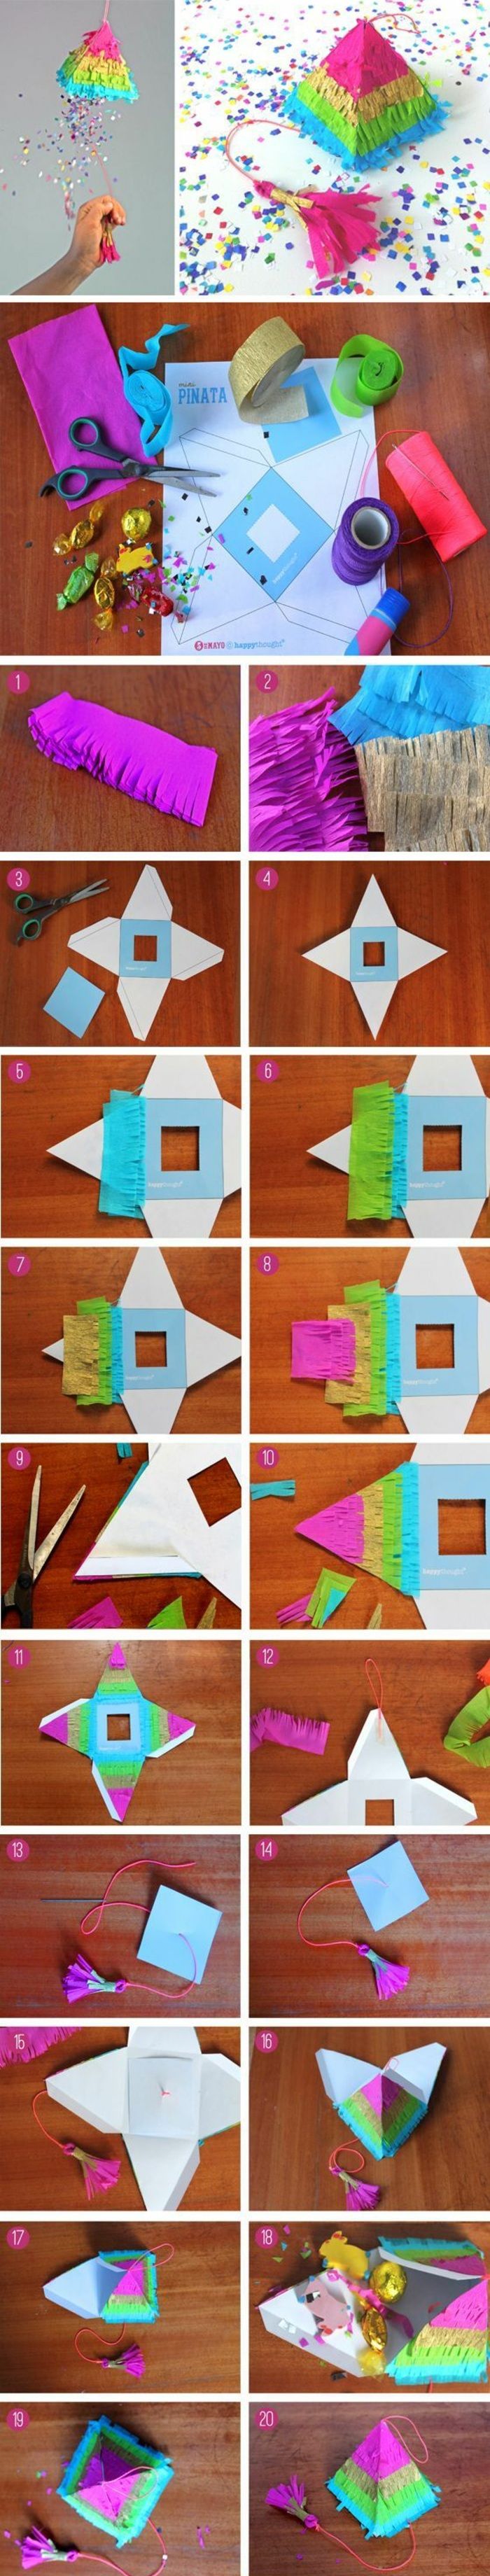 Lag en liten pyramide av papp selv, fargerikt papir, saks